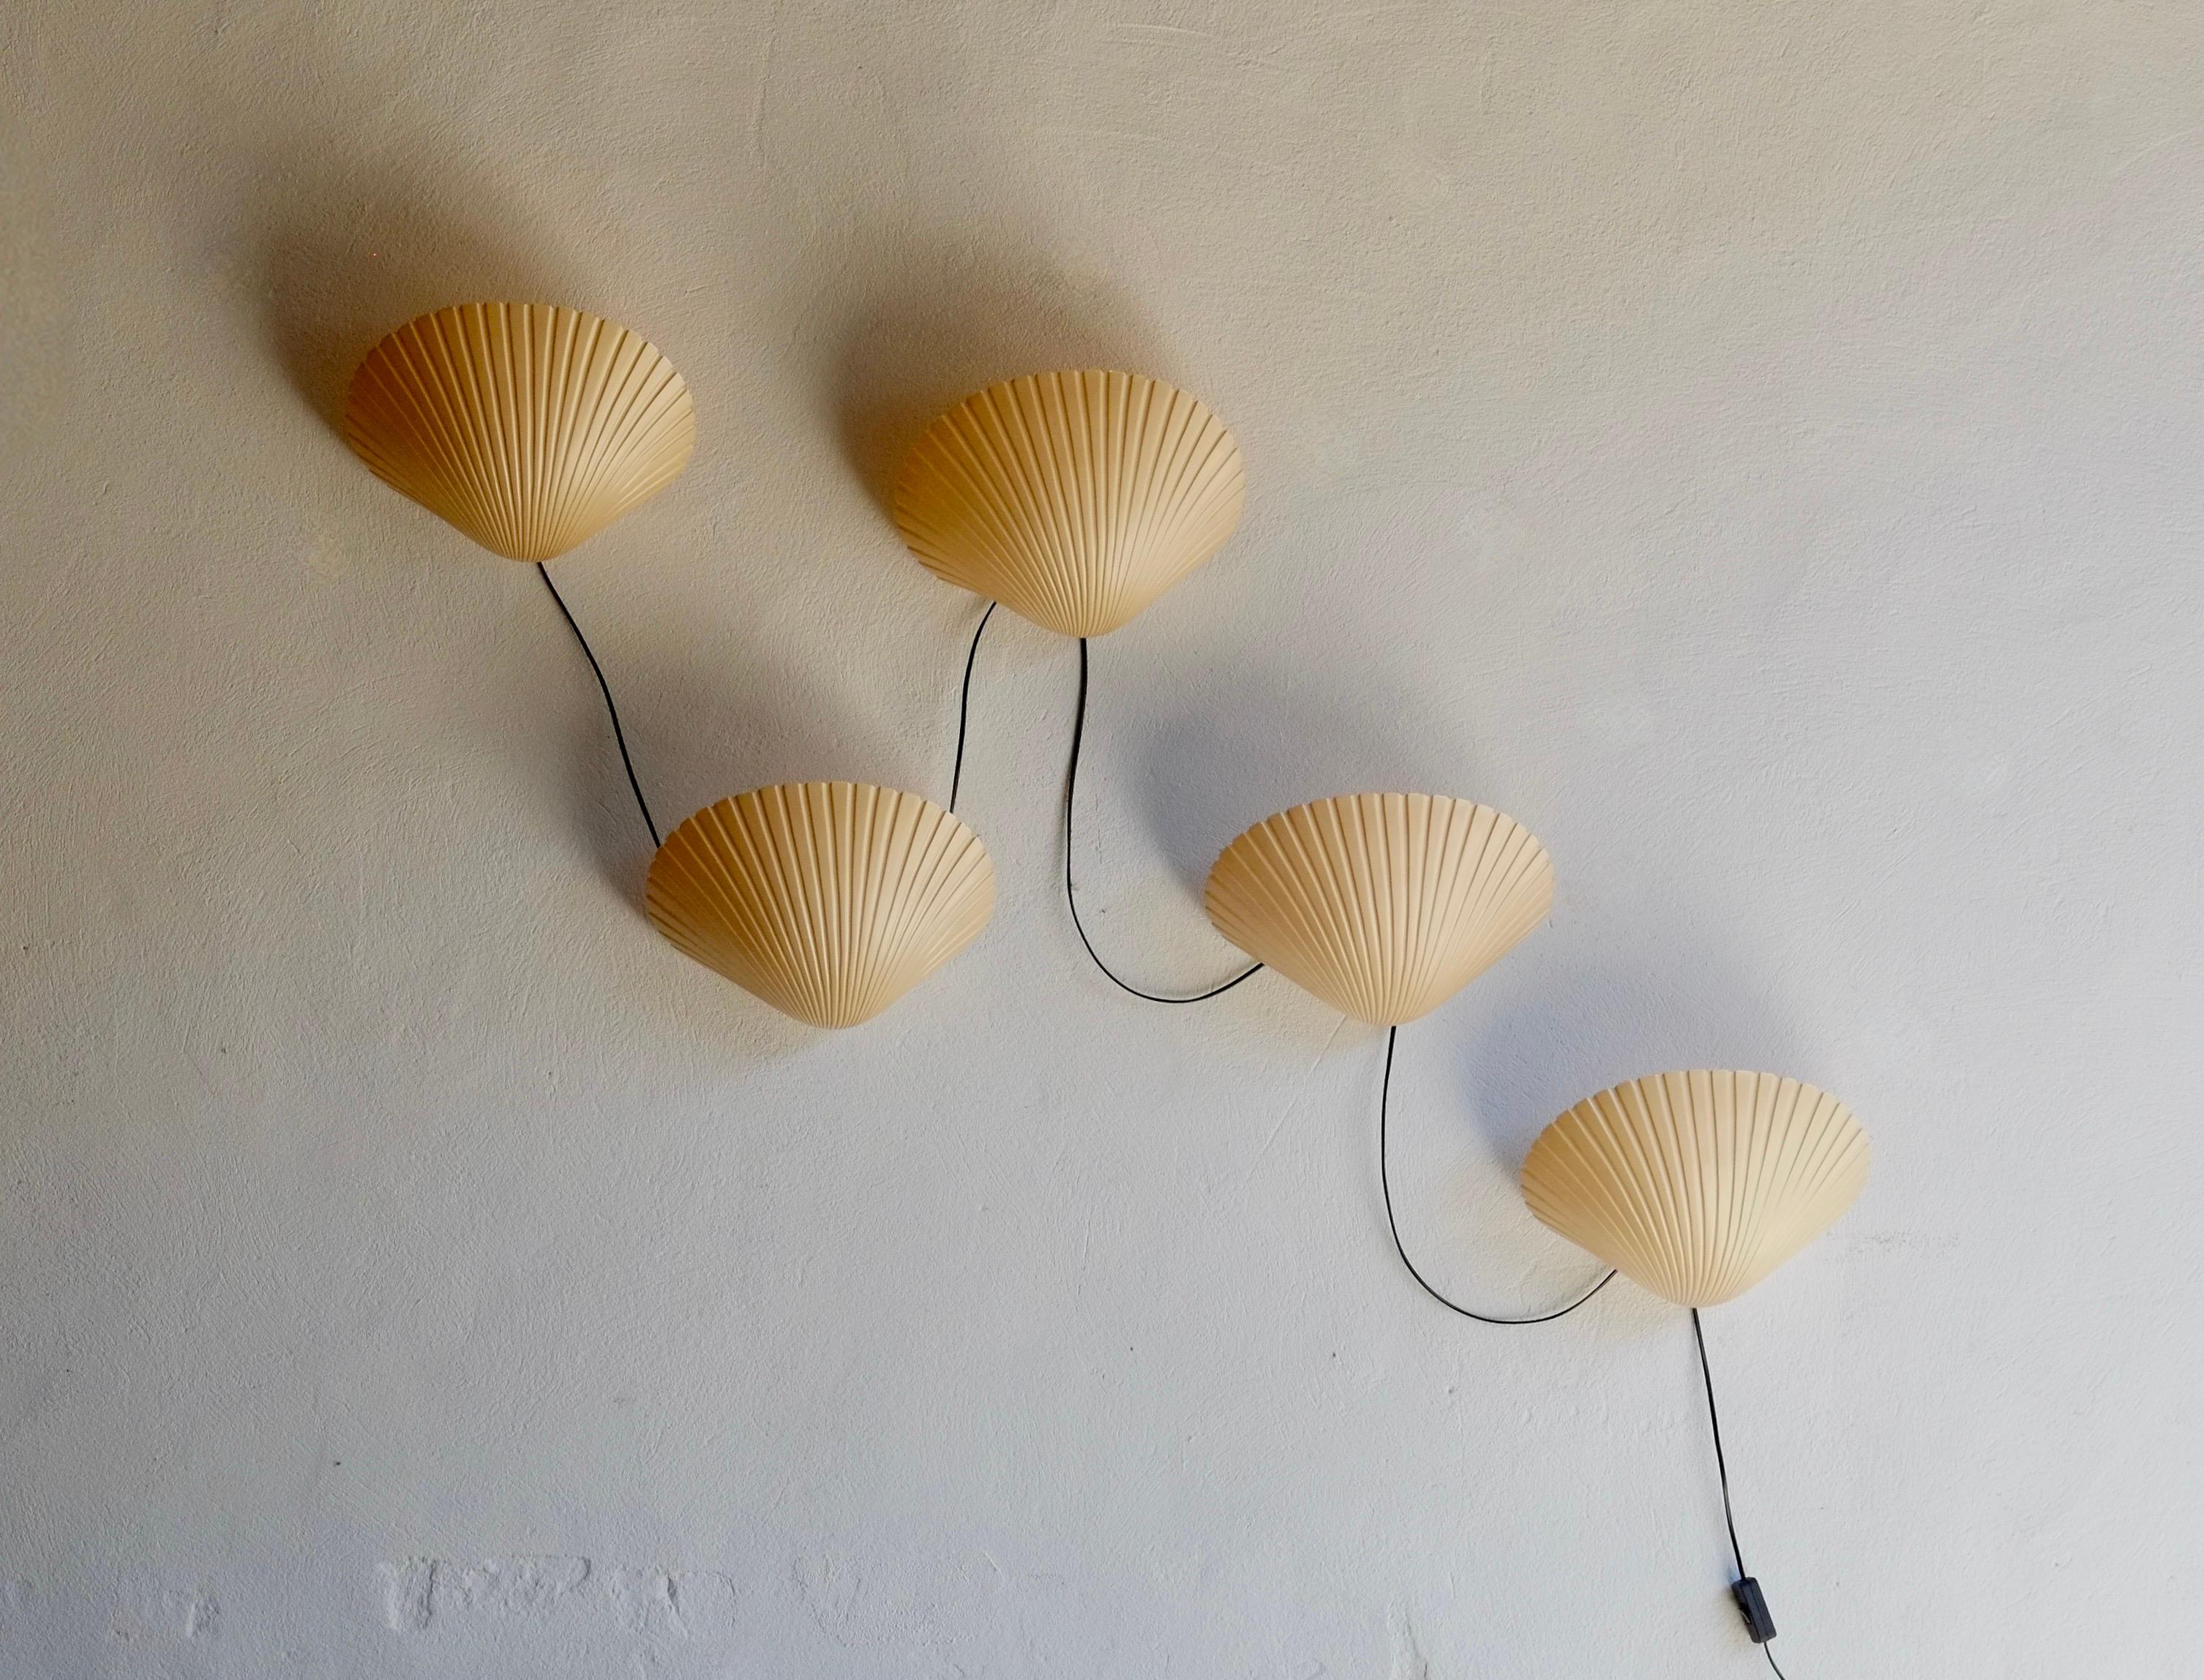 Ensemble de cinq lampes murales en forme de coquille en fibre de verre par Michelle Mahe et Andre Cazenave pour Atelier-A, 1968.

Les lampes peuvent être disposées en plusieurs formes pour s'adapter à la pièce. Les lampes ont été équipées d'une